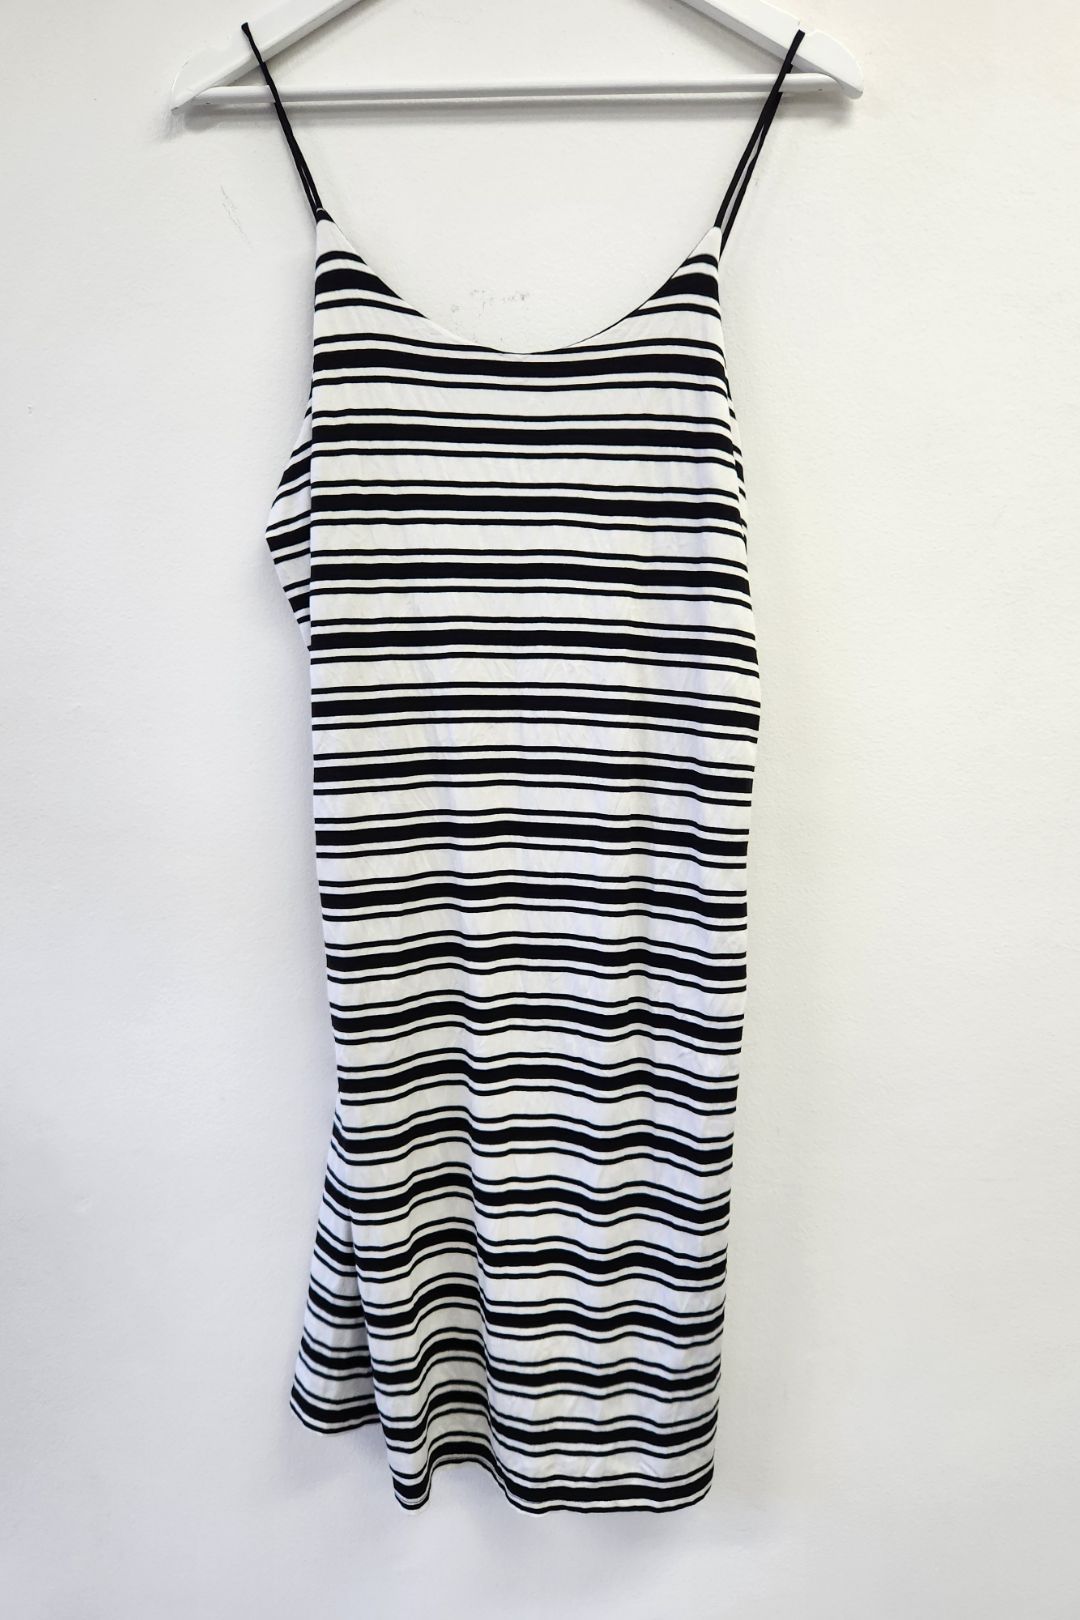 Shoe String Black Striped Dress